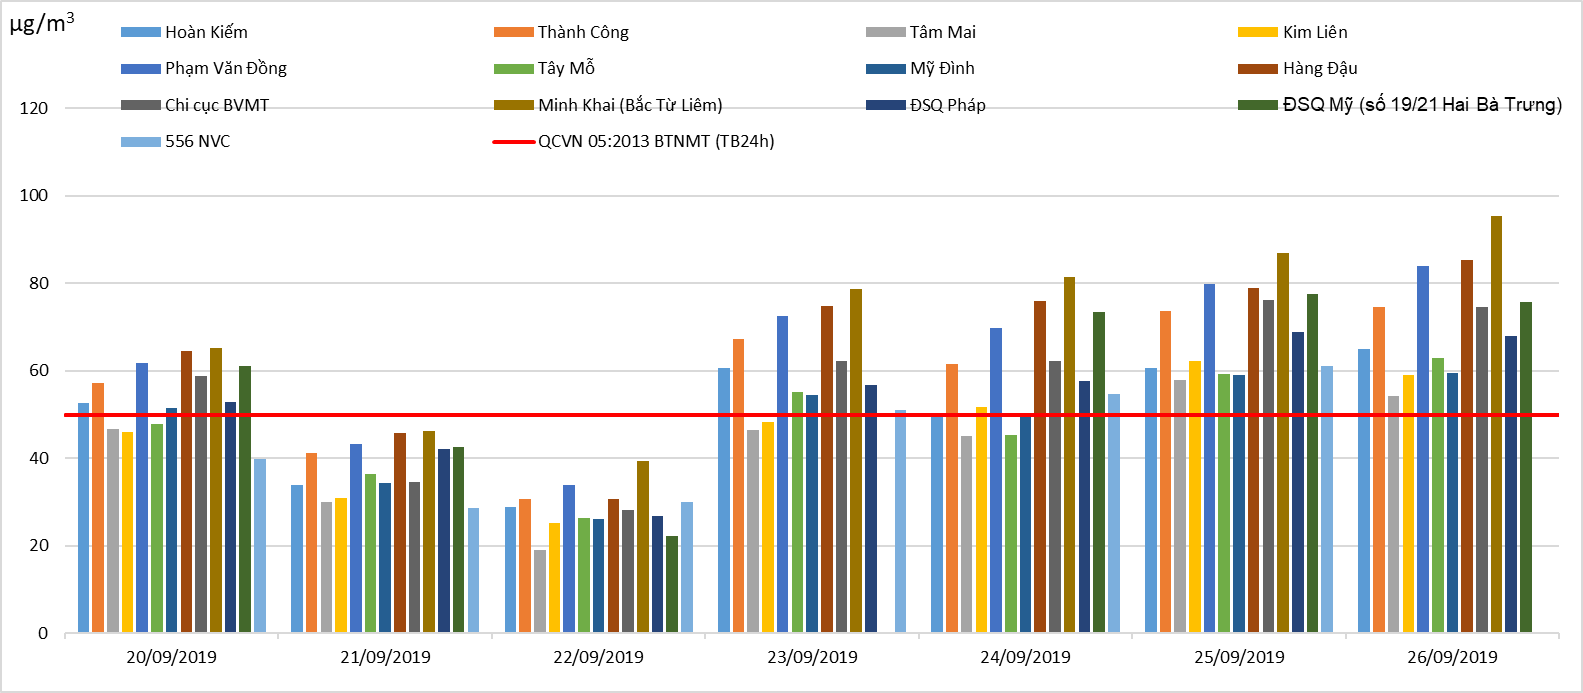 Trong thời gian từ 20/9 đến 26/9, chất lượng không khí tại Hà Nội vẫn tiếp tục có những diễn biến xấu, có tới 5/7 ngày ghi nhận giá trị trung bình 24h của thông số PM2.5 vượt ngưỡng cho phép của QCVN 05:2013/BTNMT. Tuy nhiên, các thông số khác (NO2, O3, CO, SO2) vẫn nằm trong giới hạn cho phép. Nguồn: Trung tâm quan trắc môi trường miền Bắc, Tổng cục môi trường.